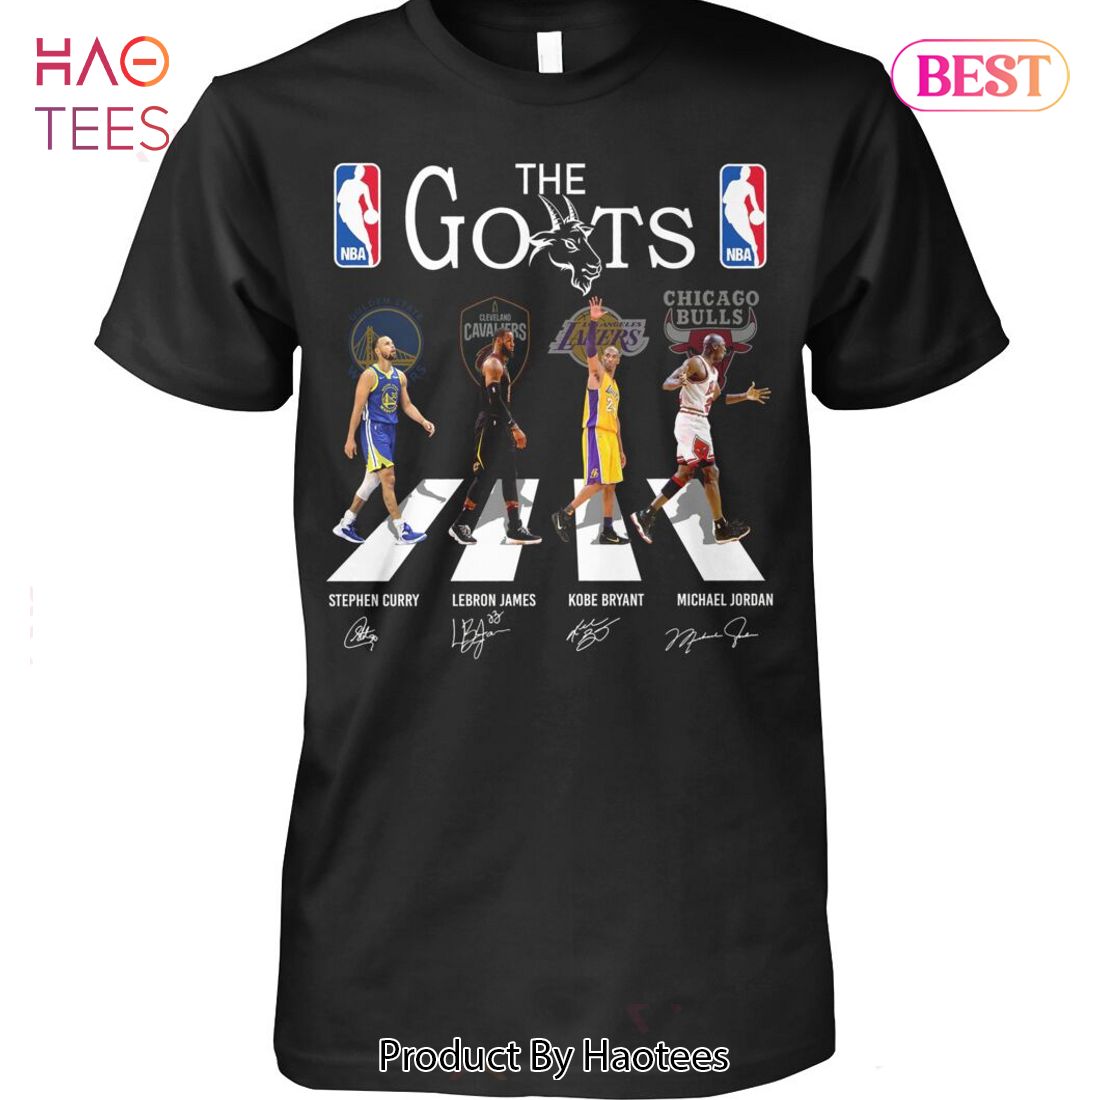 HOT TREND NBA The Goats Unisex T-Shirt